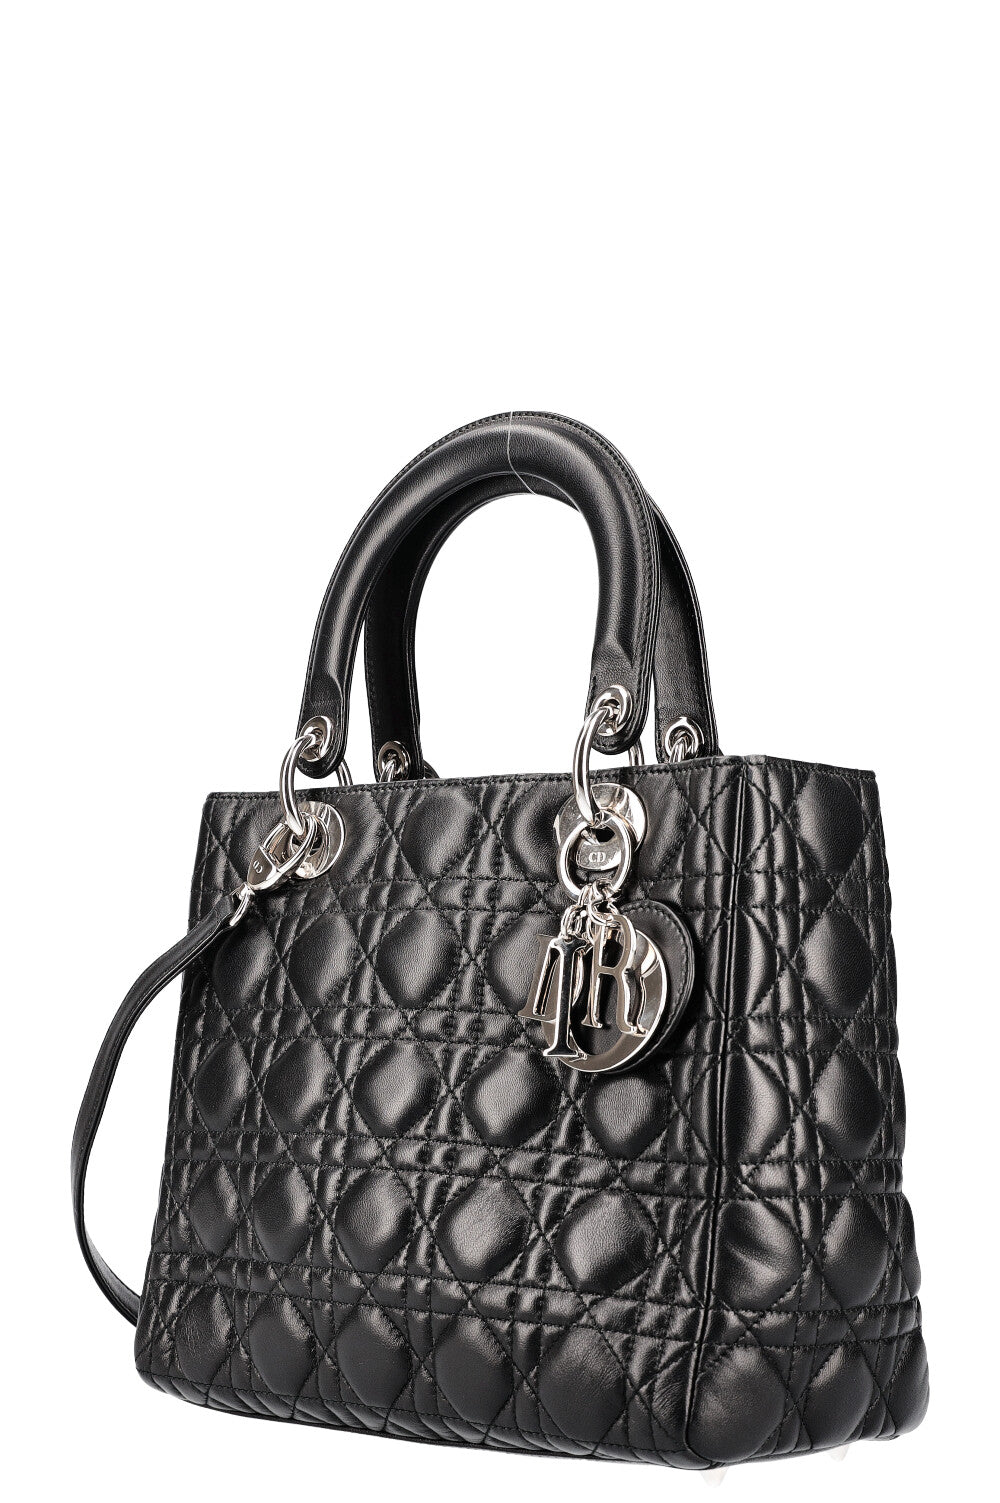 CHRISTIAN DIOR Lady Dior Bag  Medium Cannage Black